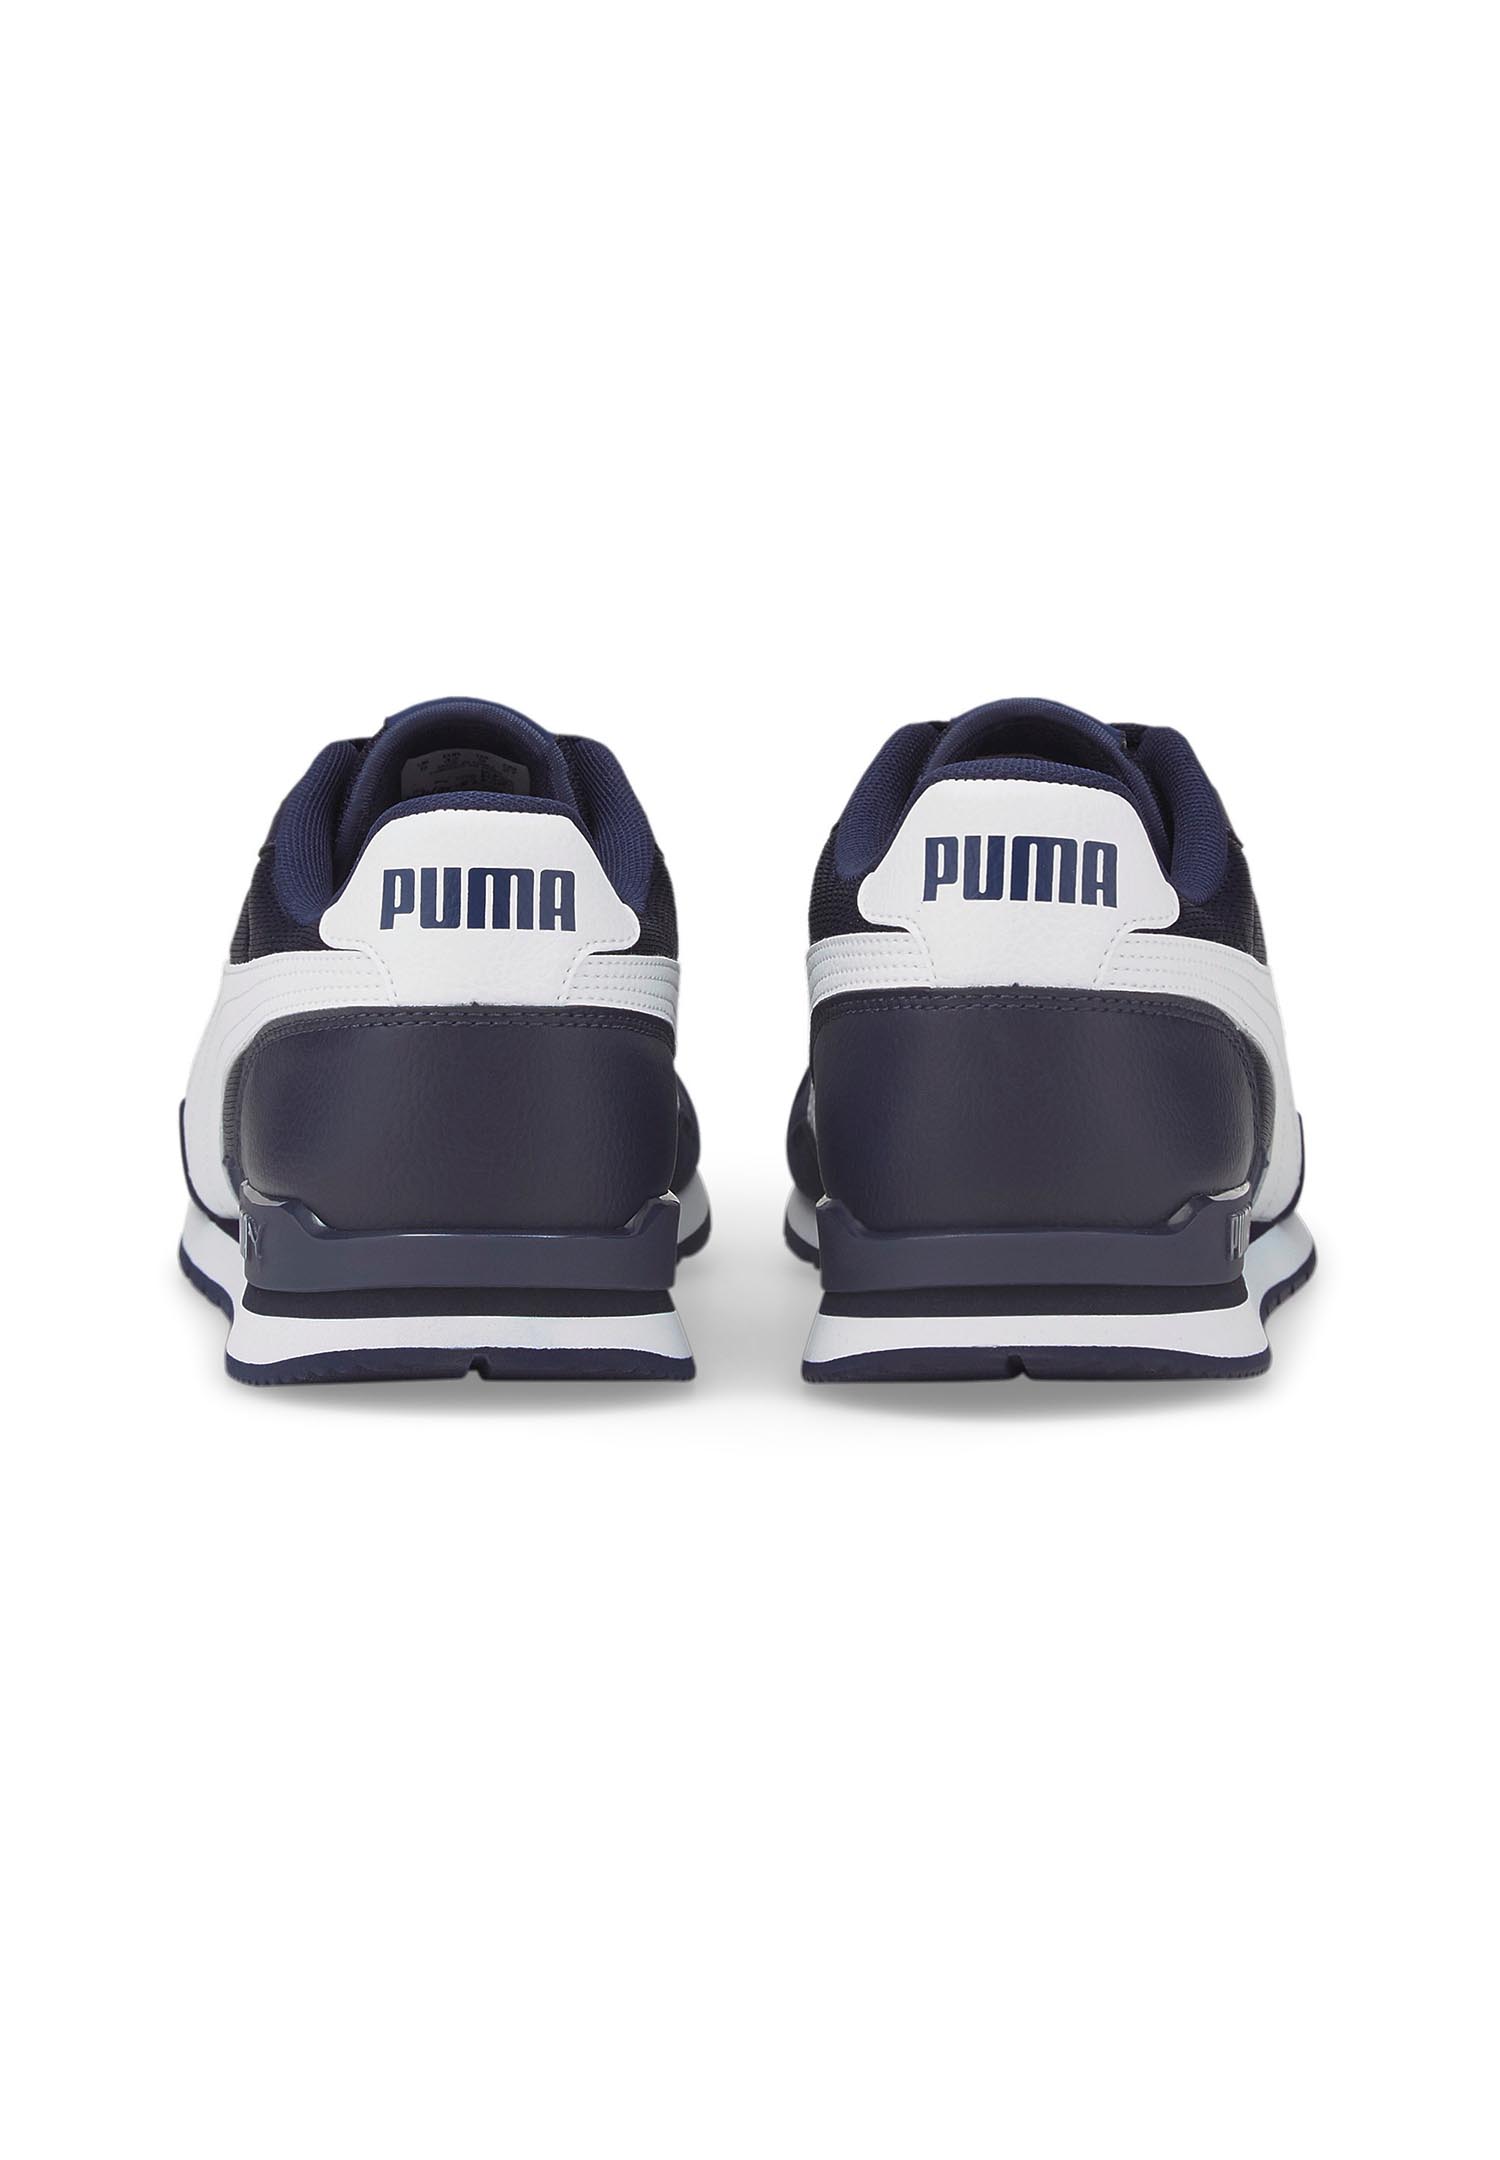 Puma ST Runner V3 MESH Unisex Sneaker Turnschuhe 384640 blau